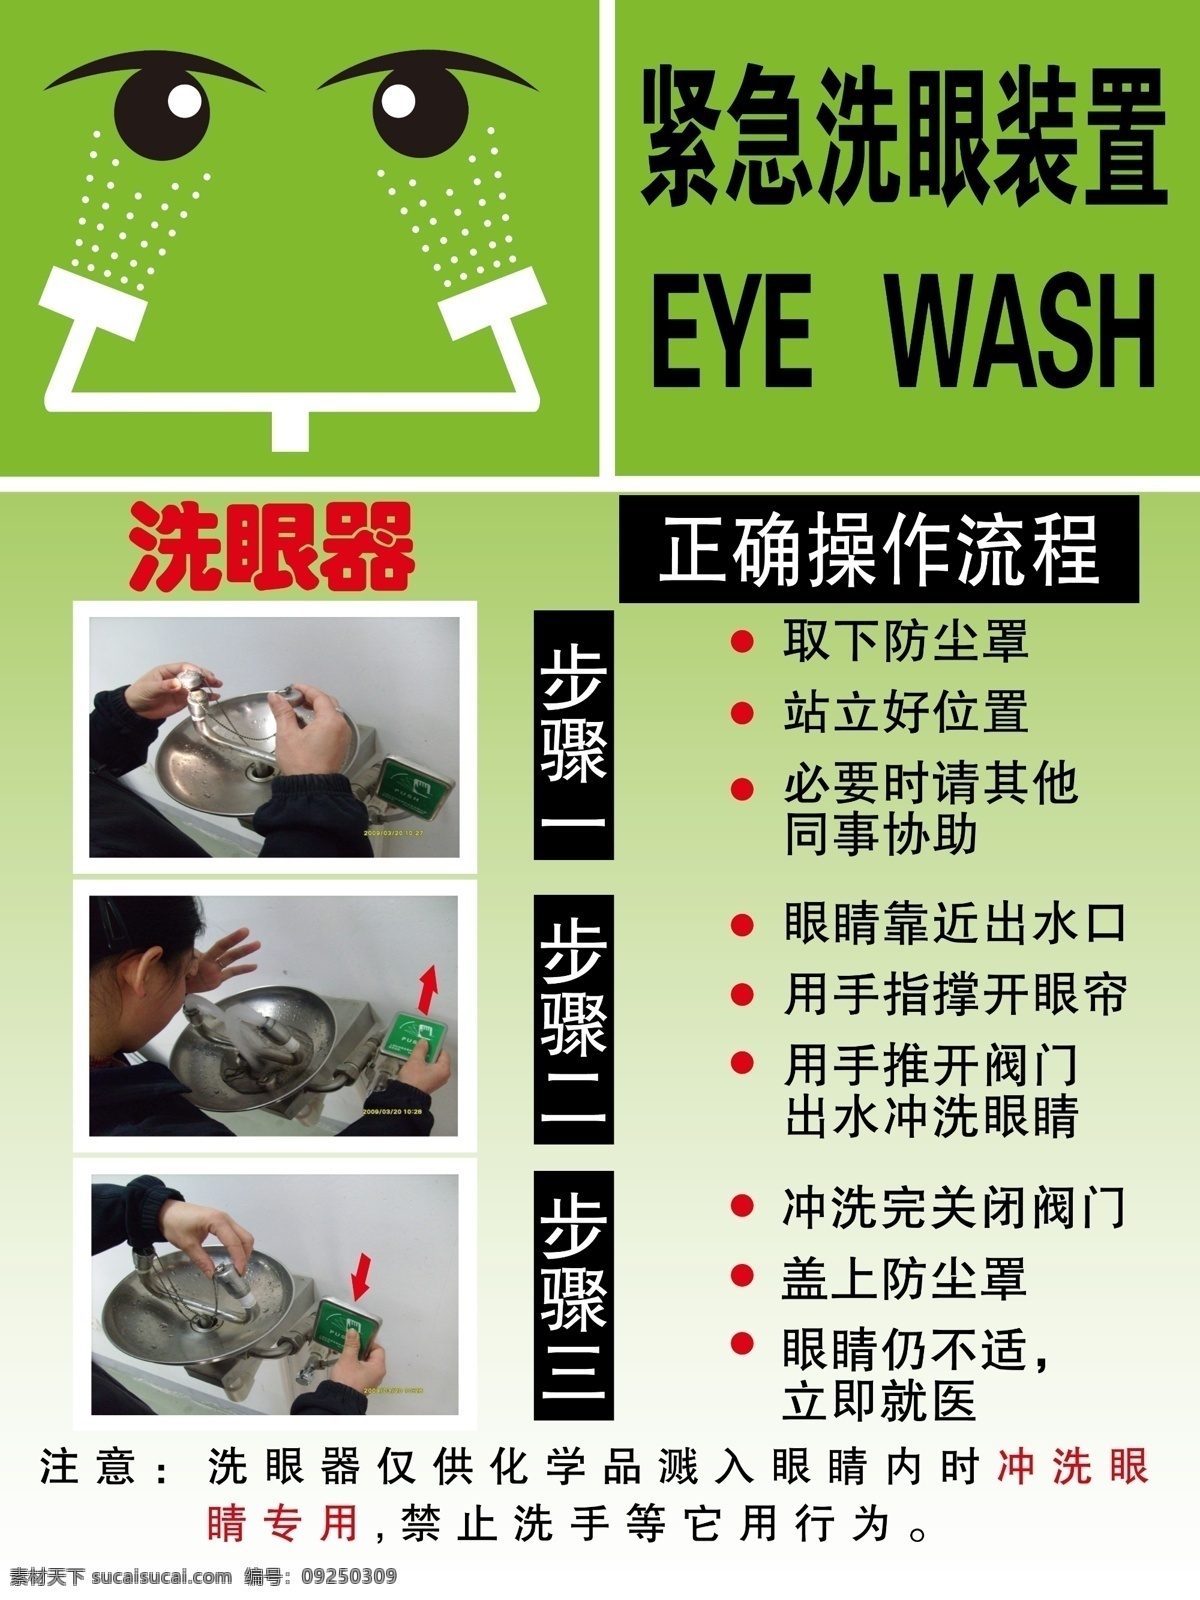 洗眼装置 洗眼睛 警示牌 操作流程 紧急装置 绿色 分层